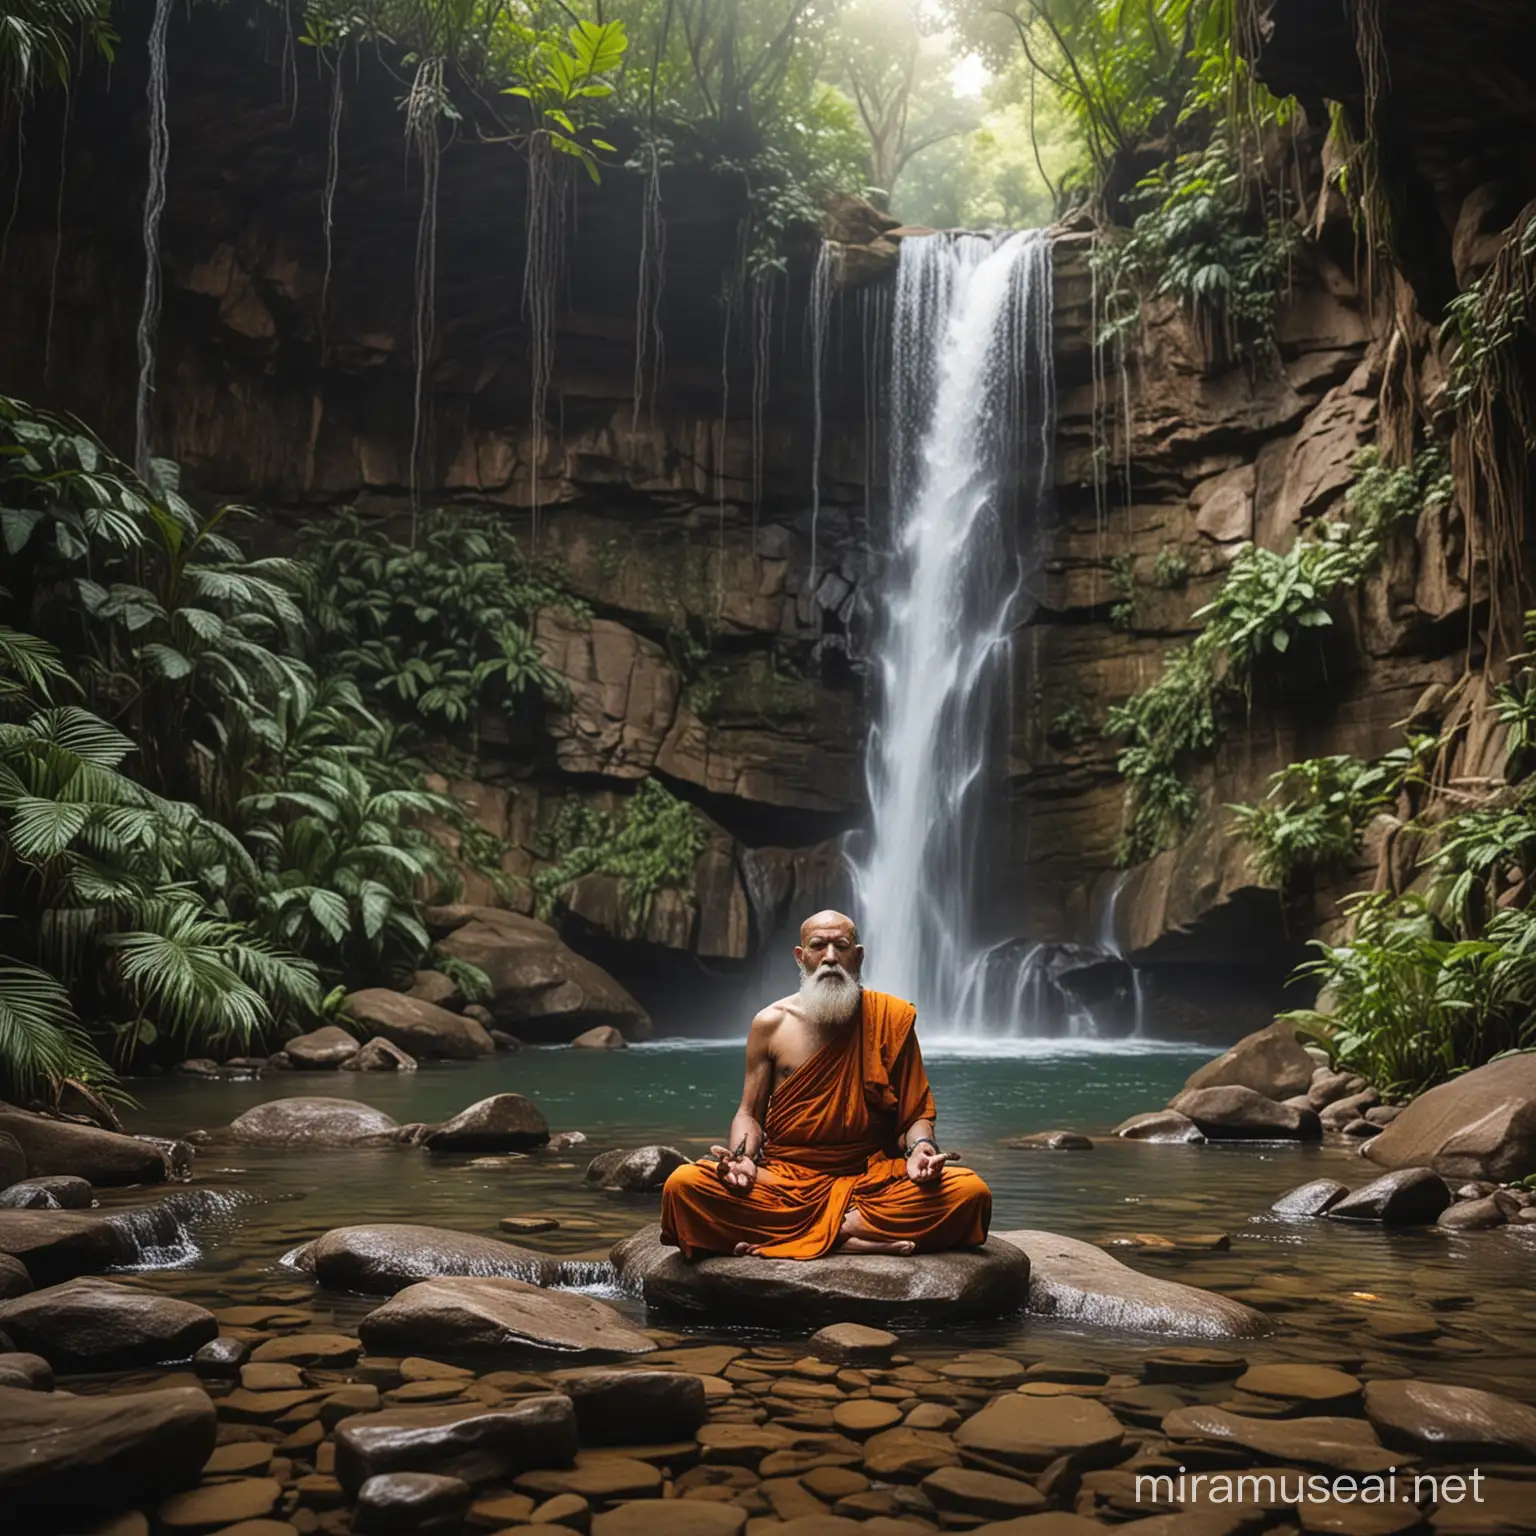 Mystical Meditation Ancient Jungle Monk Meditating at Waterfall